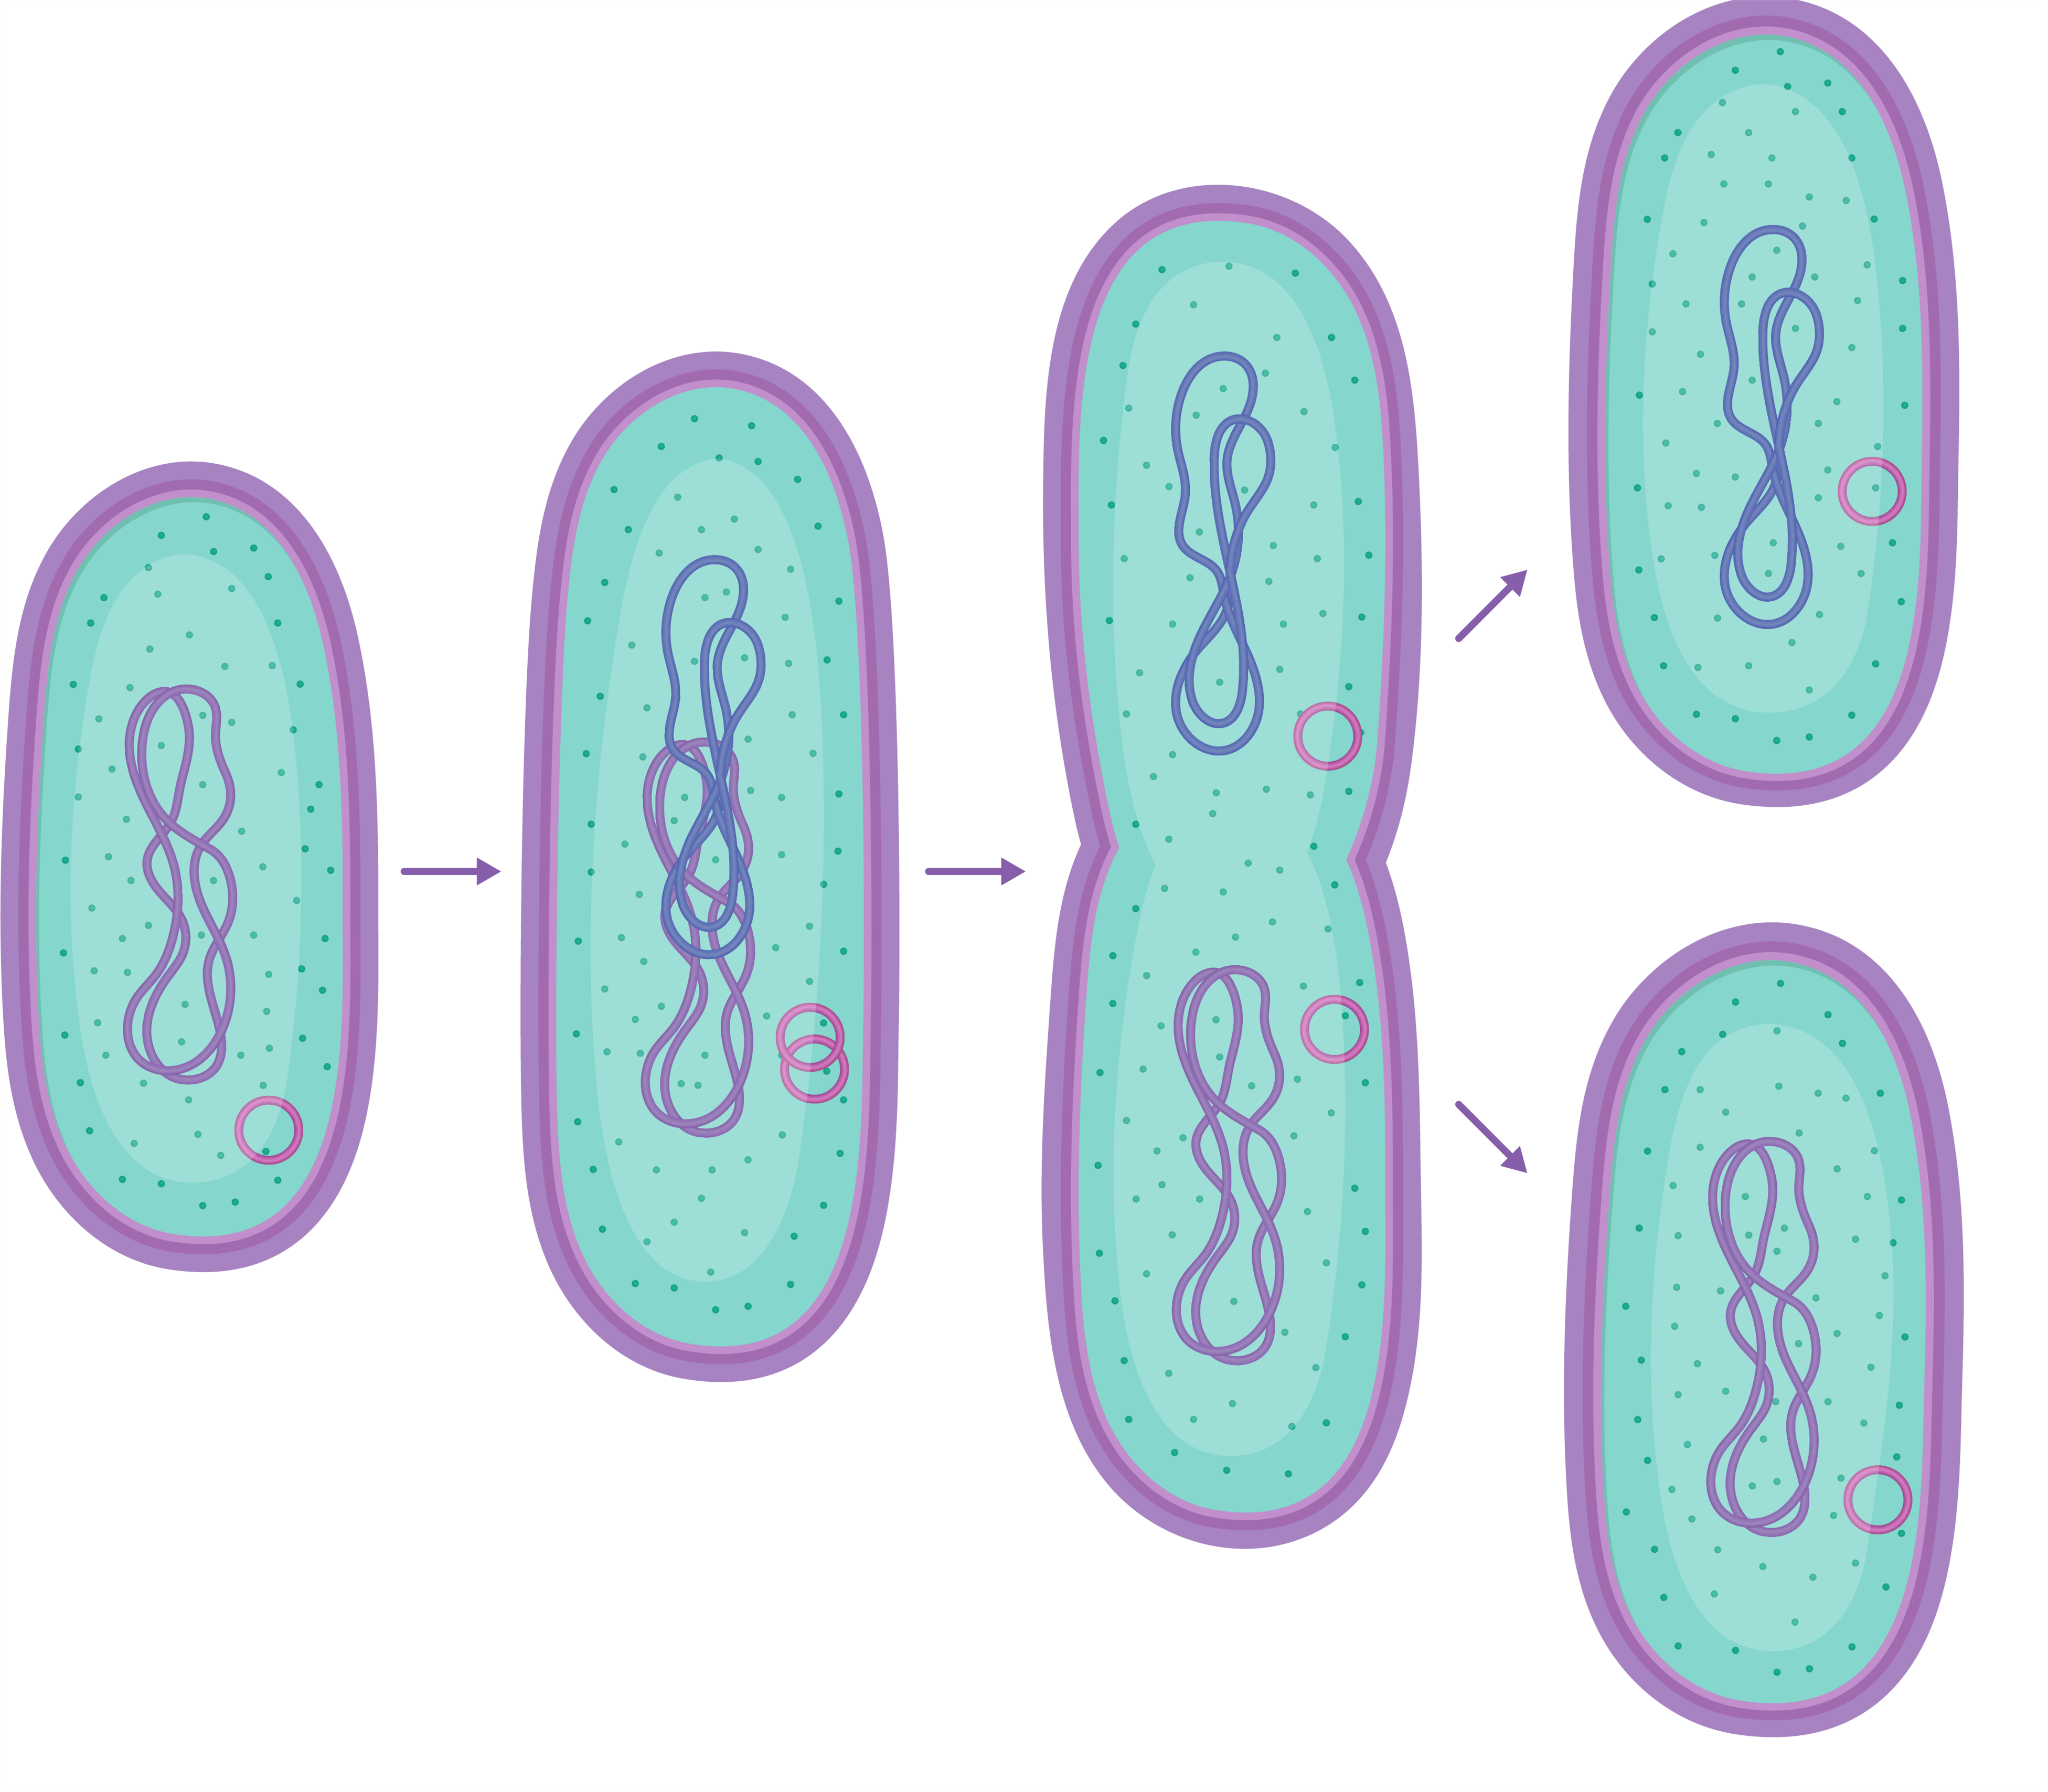 Бинарное деление бактерий схема. Размножение бактерий бинарное деление. Бинарное деление прокариот. Бинарное деление бактерий бесполое. Прямым бинарным делением клетки